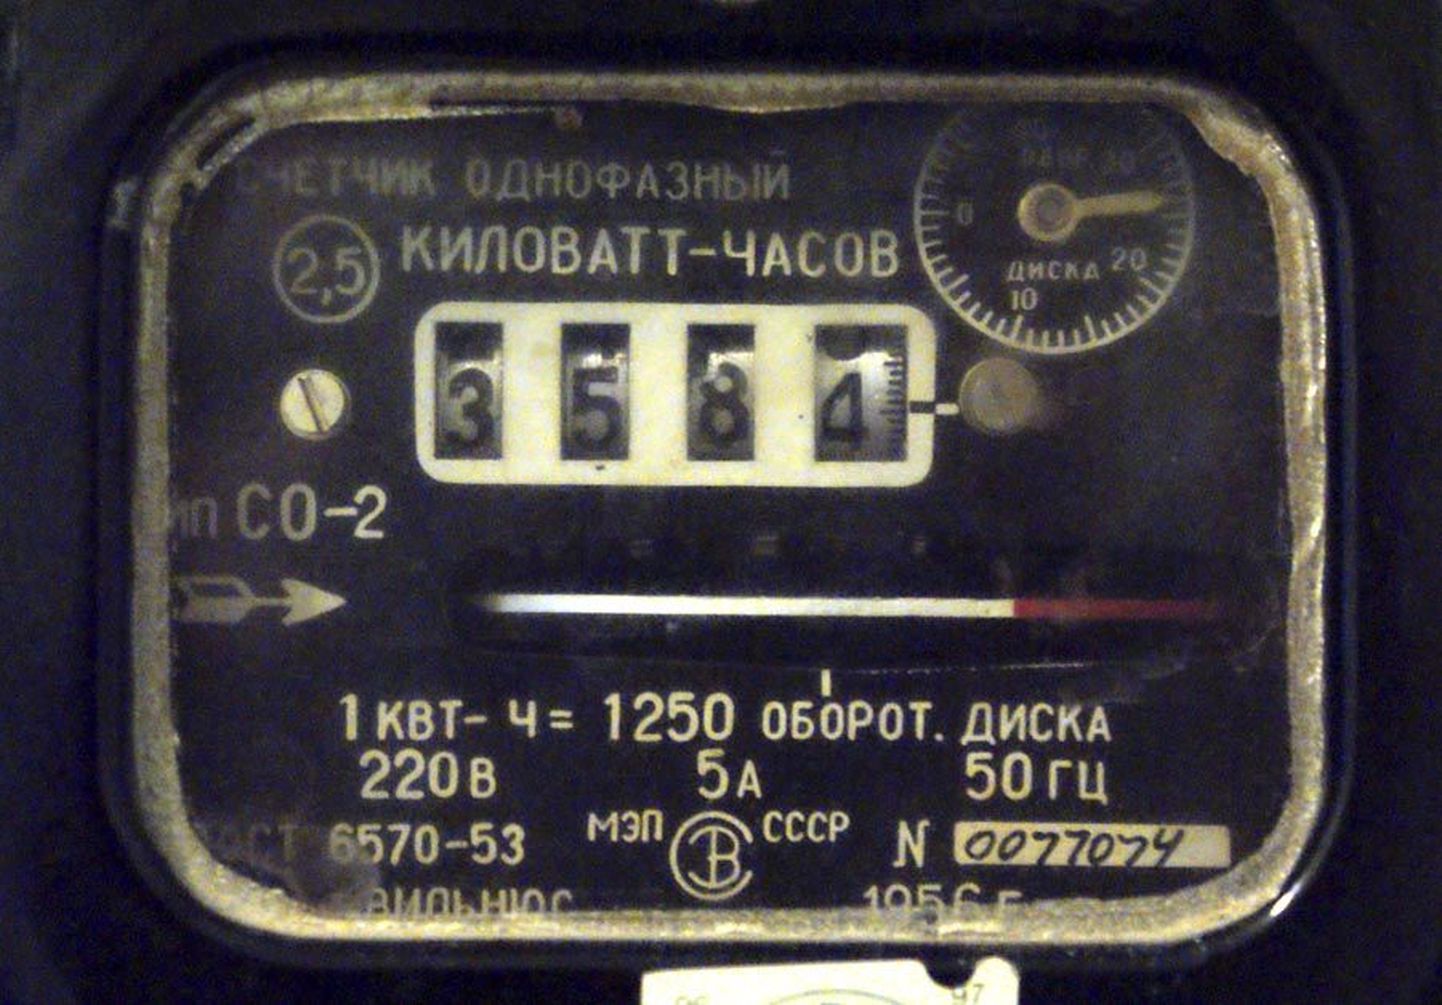 Elektriarve koosneb kolmest komponendist ja nende kõigi arvutamise alus on tarbitud elektrienergia. Tänapäevalgi on veel kasutusel selliseid nõukogudeaegseid voolumõõtjaid.